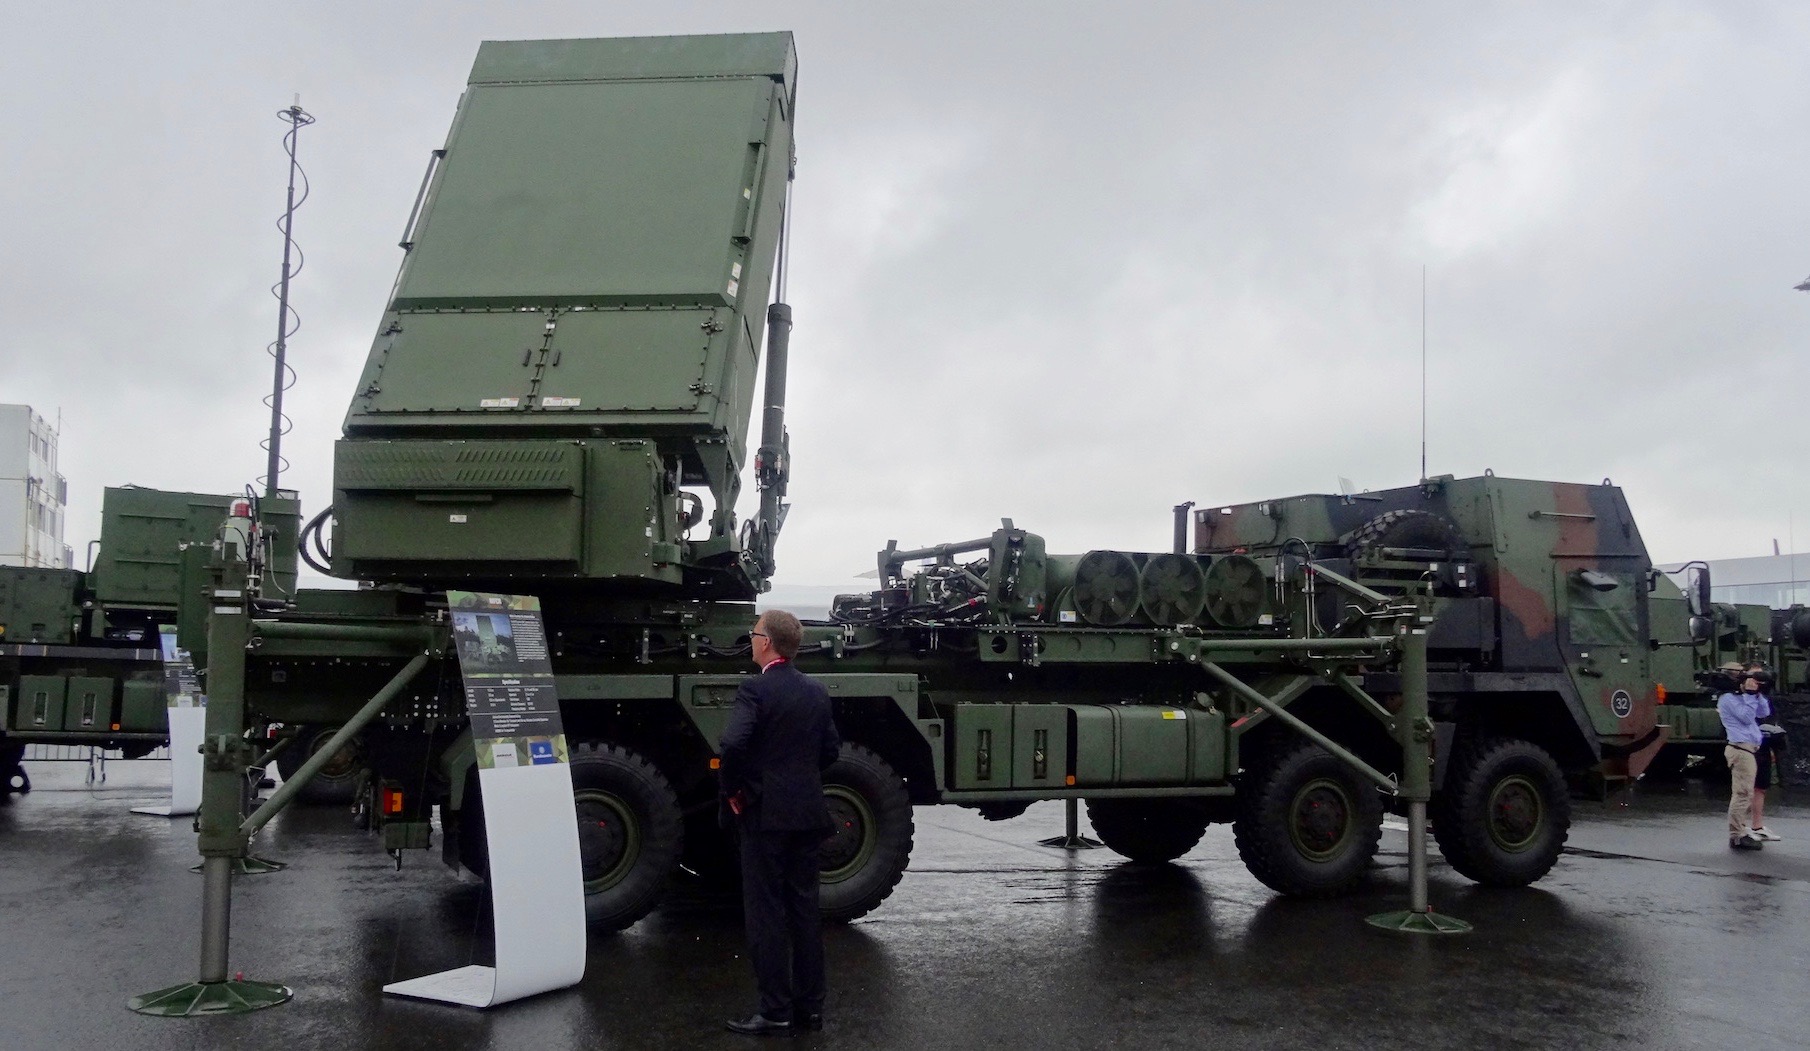 Radar wielofunkcyjny systemu MEADS na ekspozycji Bundeswehry podczas ILA 2016 - fot. J.Sabak